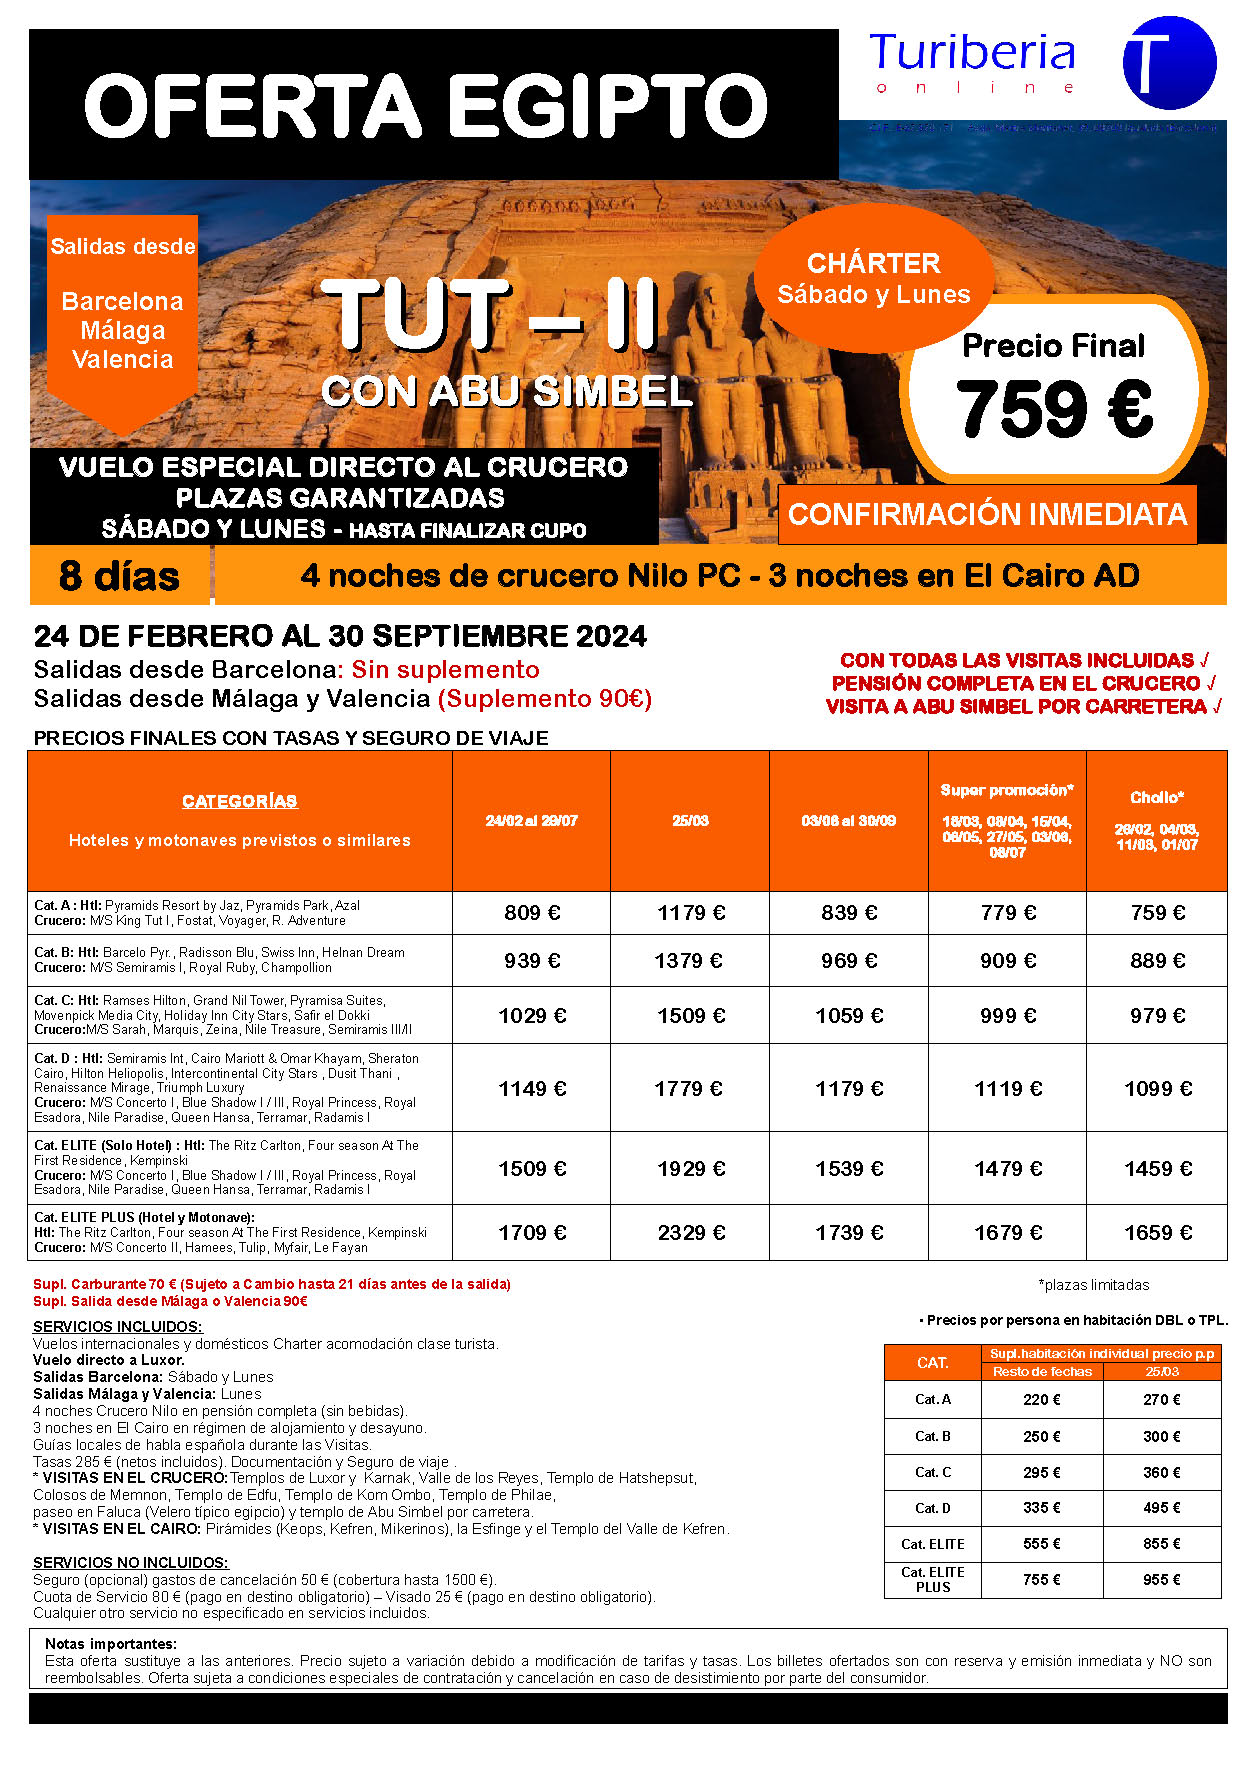 Oferta Turiberia circuito Egipto Charter TUT 2 con Abu Simbel 8 dias salidas Febrero a Septiembre 2024 vuelo directo a Luxor desde Barcelona Malaga Valencia